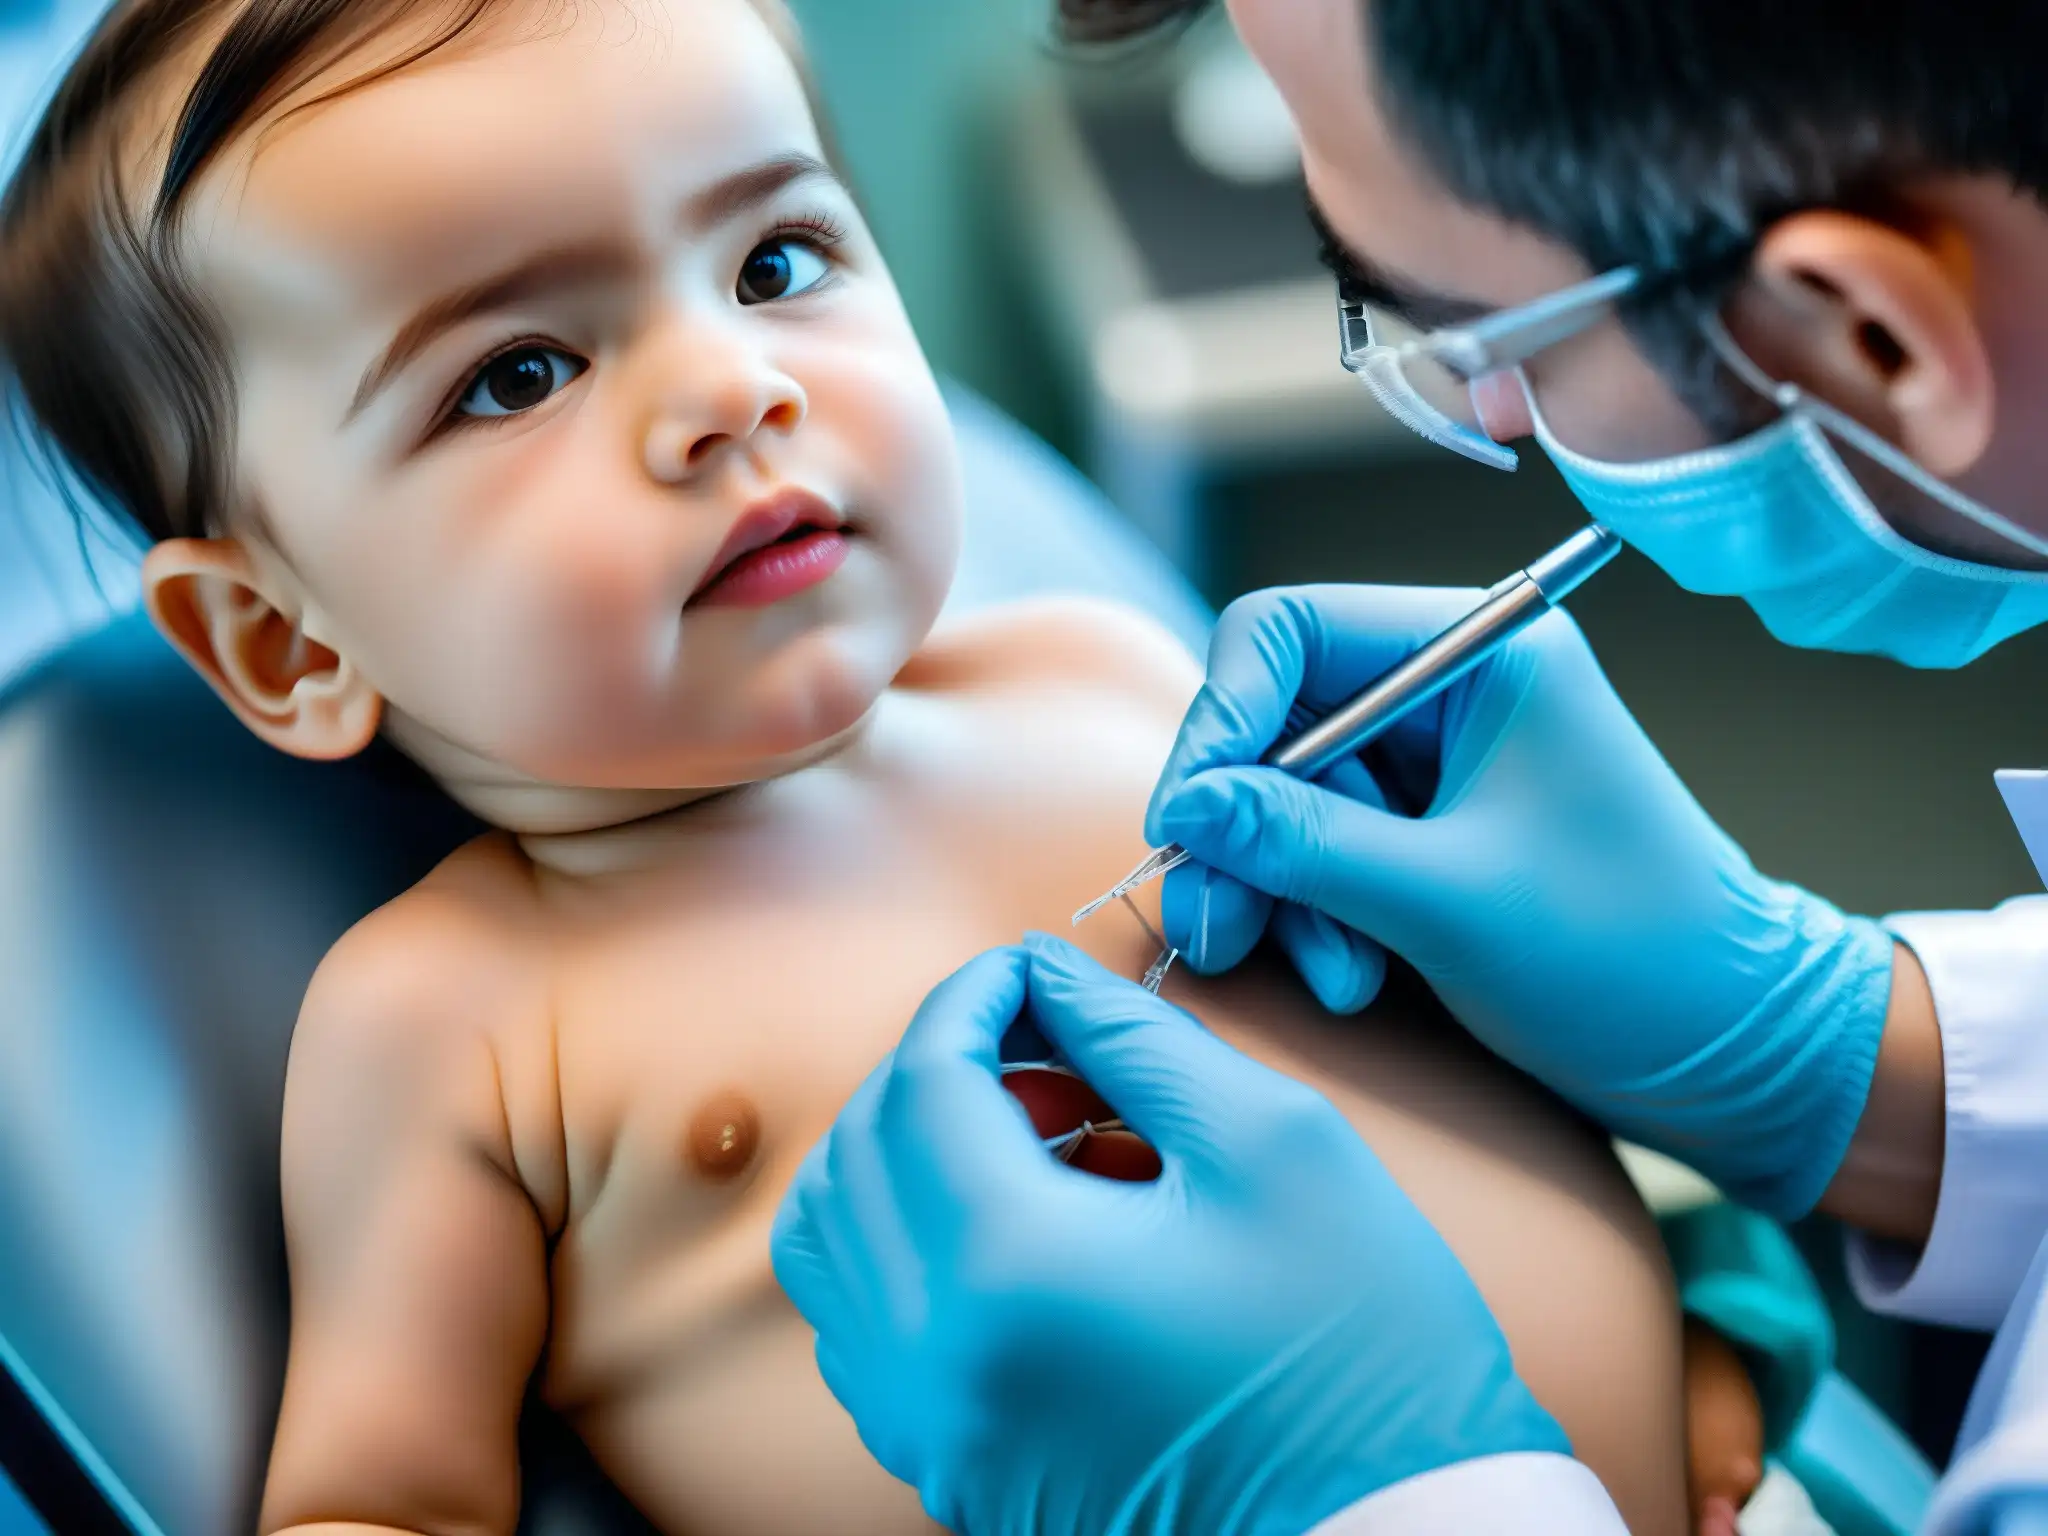 Un médico administra una vacuna a un niño, transmitiendo seguridad y cuidado, desmintiendo mitos urbanos sobre salud pública